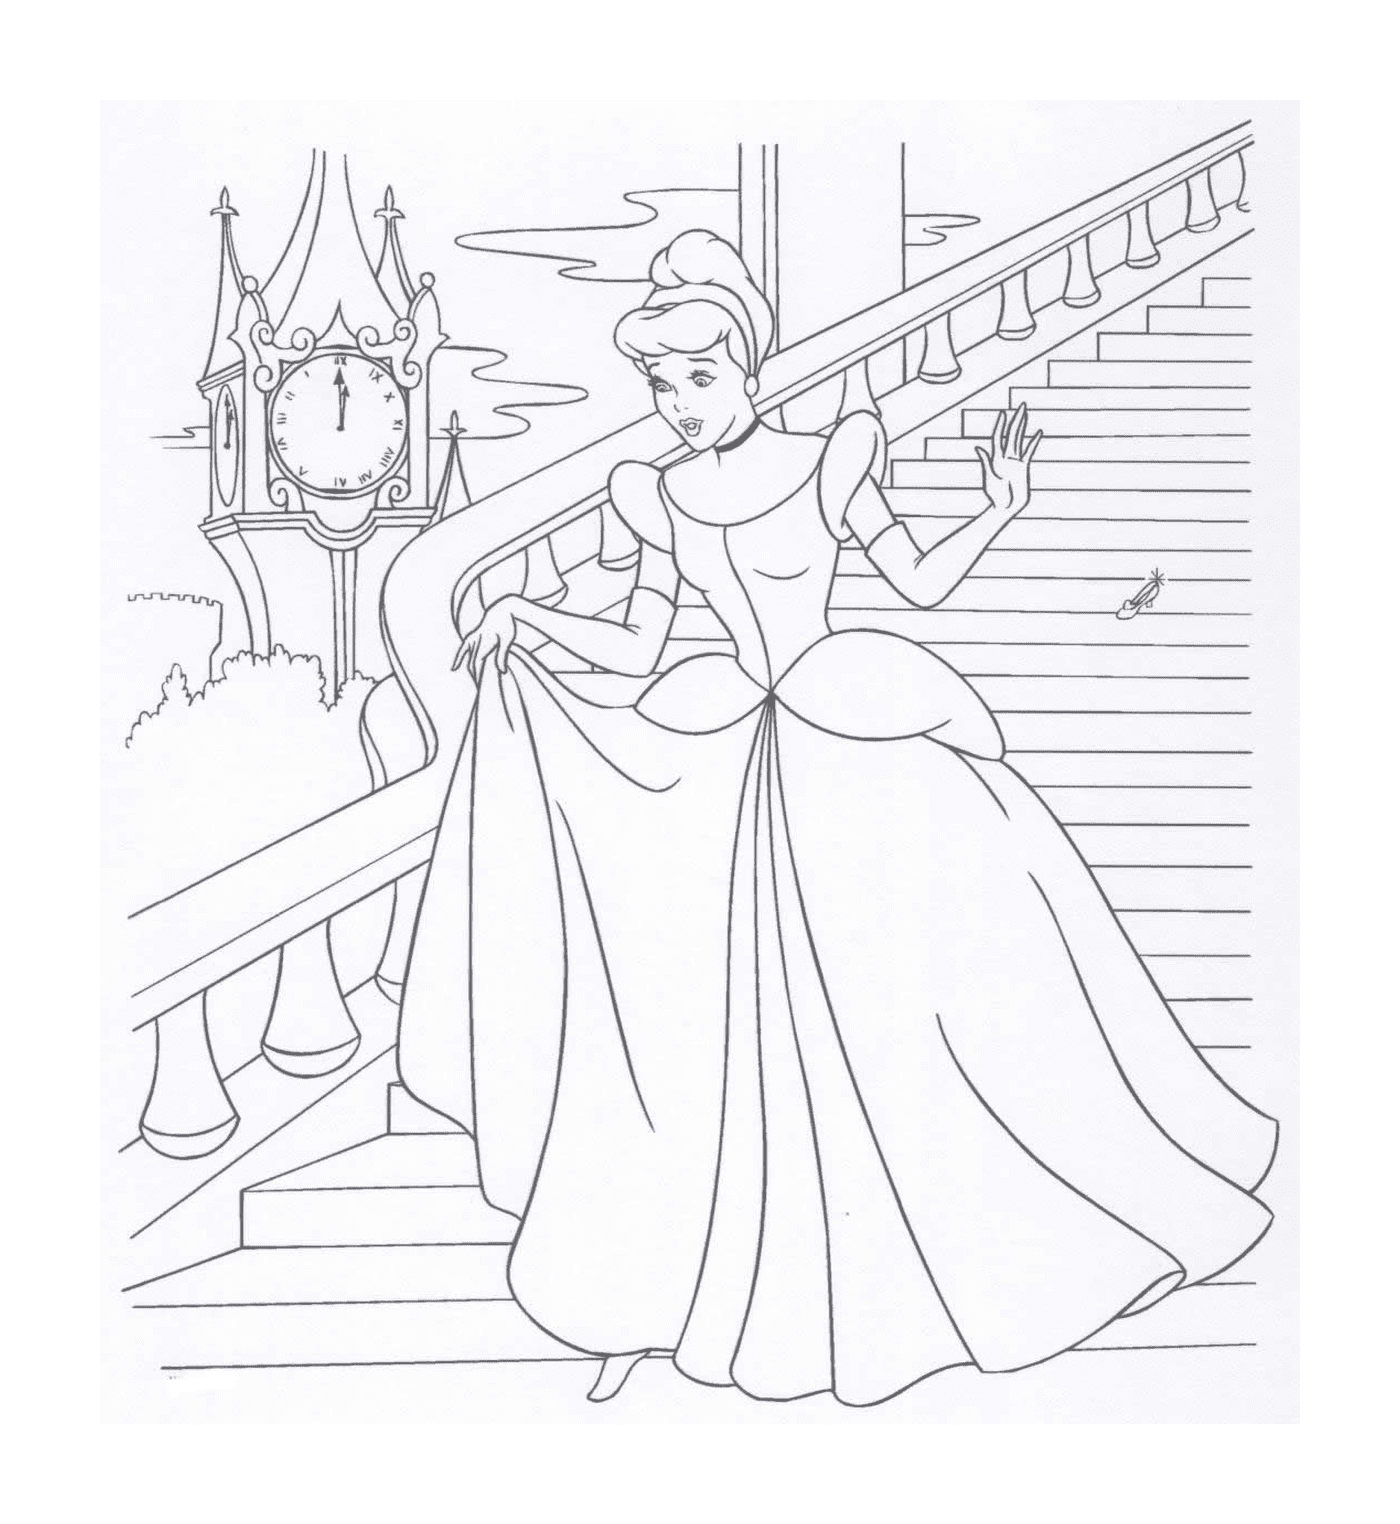  राजकुमारी सीढ़ियों पर खड़ी है 